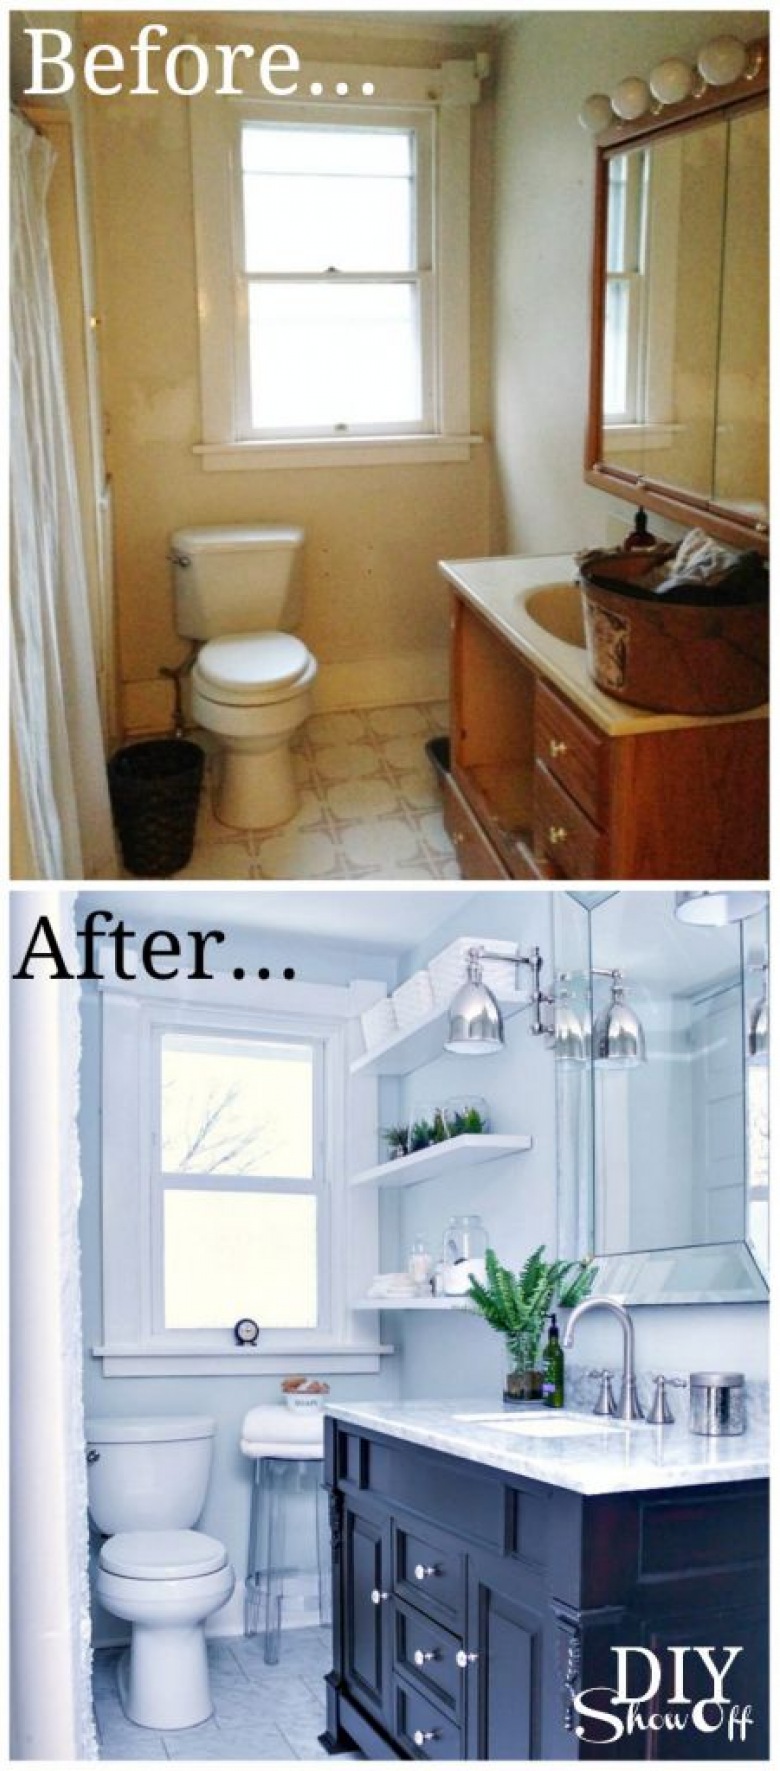 Before & after łazienki, czyli przemiana z zaniedbanego wnętrza w wyjątkowo elegancką przestrzeń ()